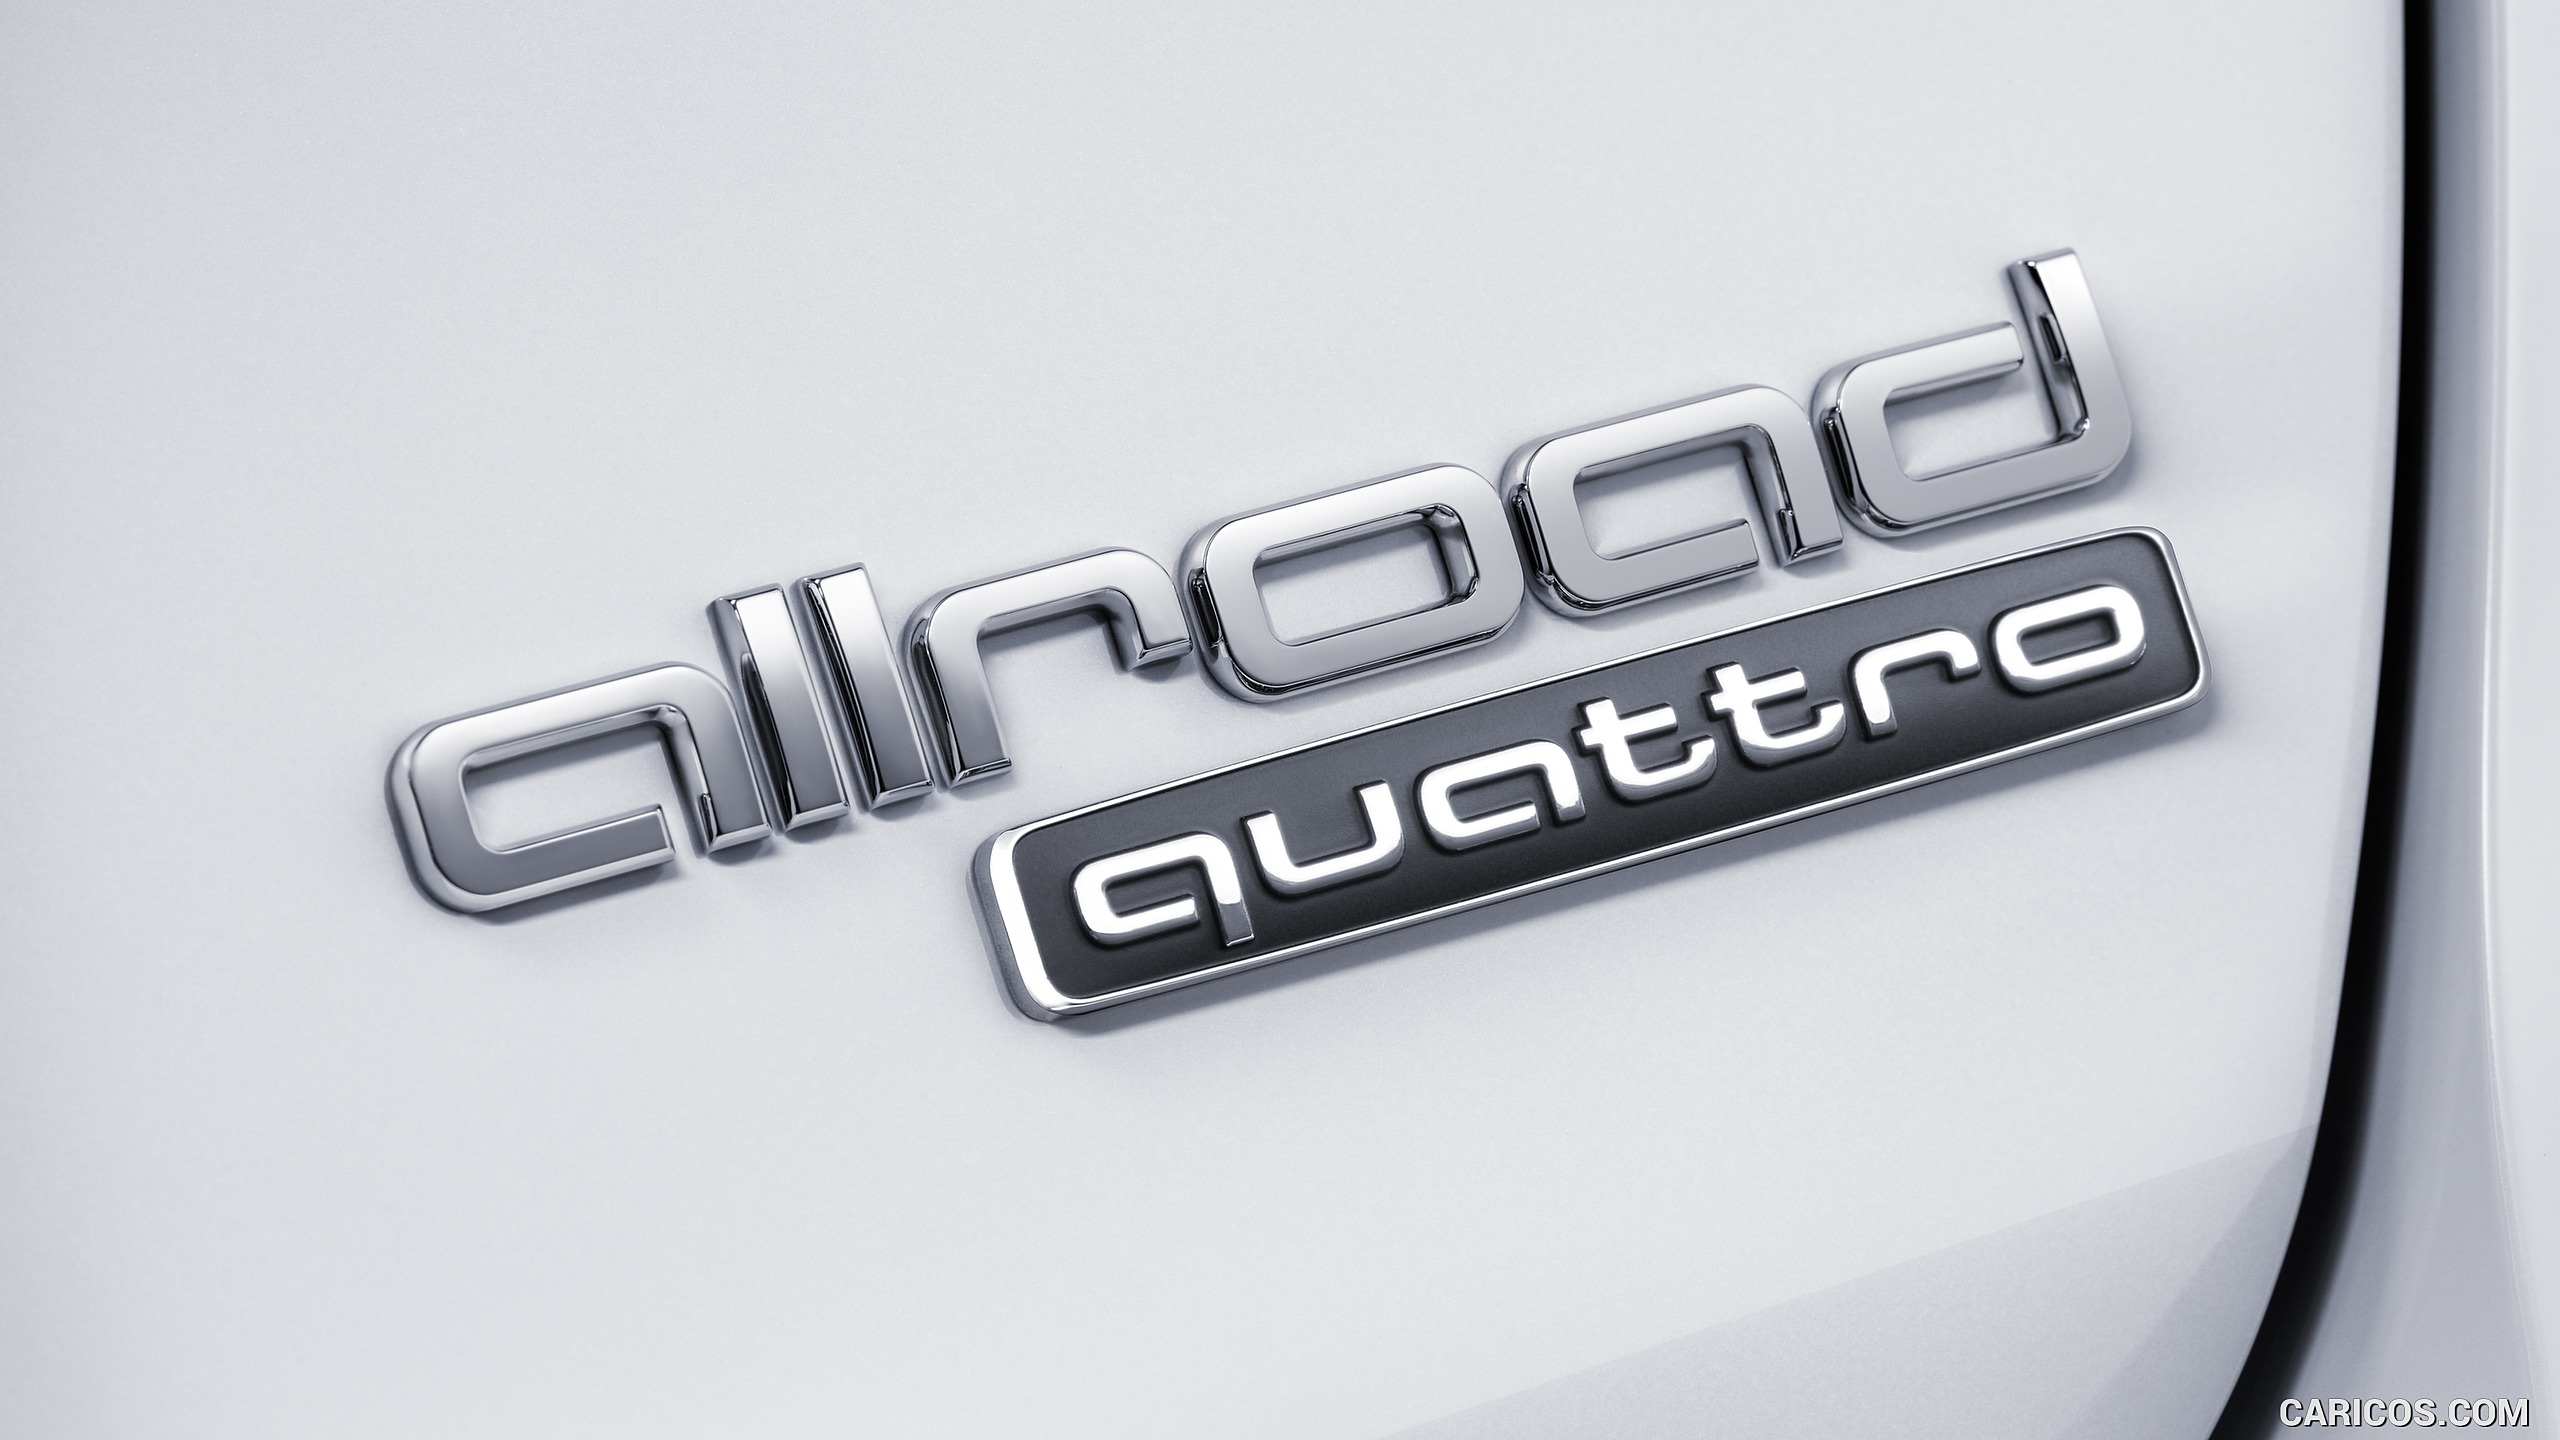 Audi A4 Allroad Quattro Color Glacier White Badge HD